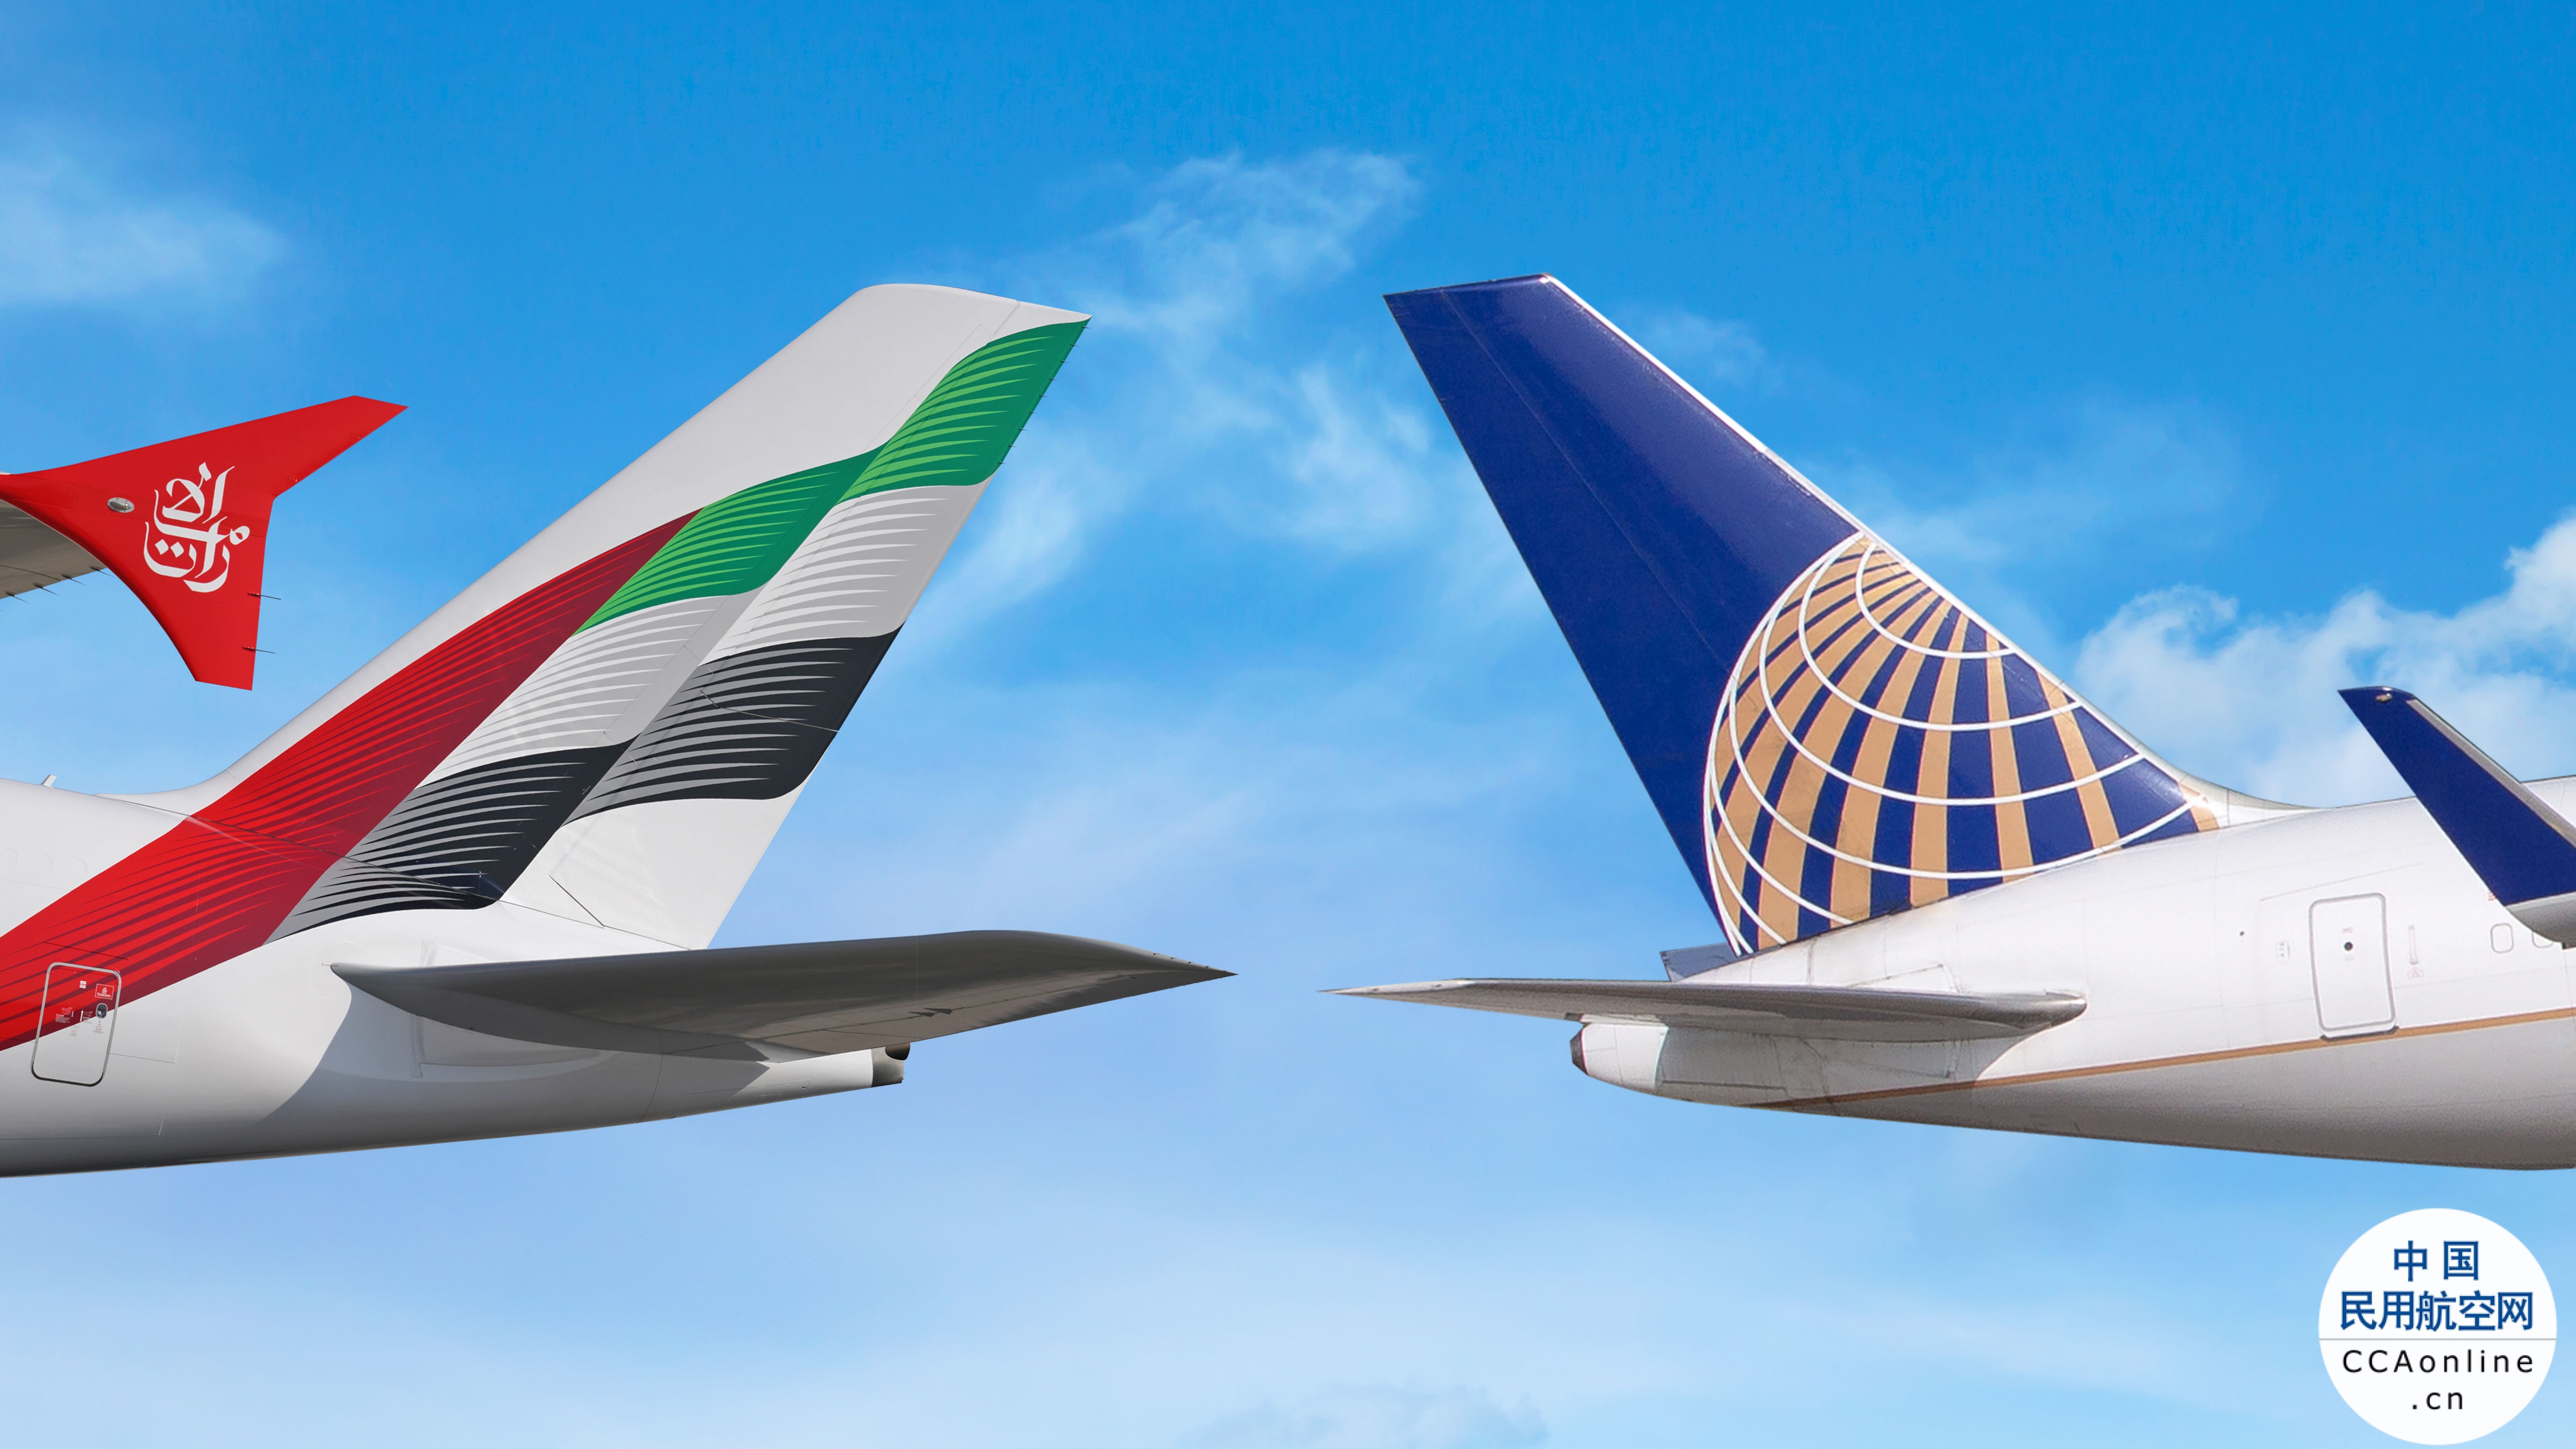 阿联酋航空和美联航启动代码共享合作伙伴关系 以扩展前往美国的航线网络